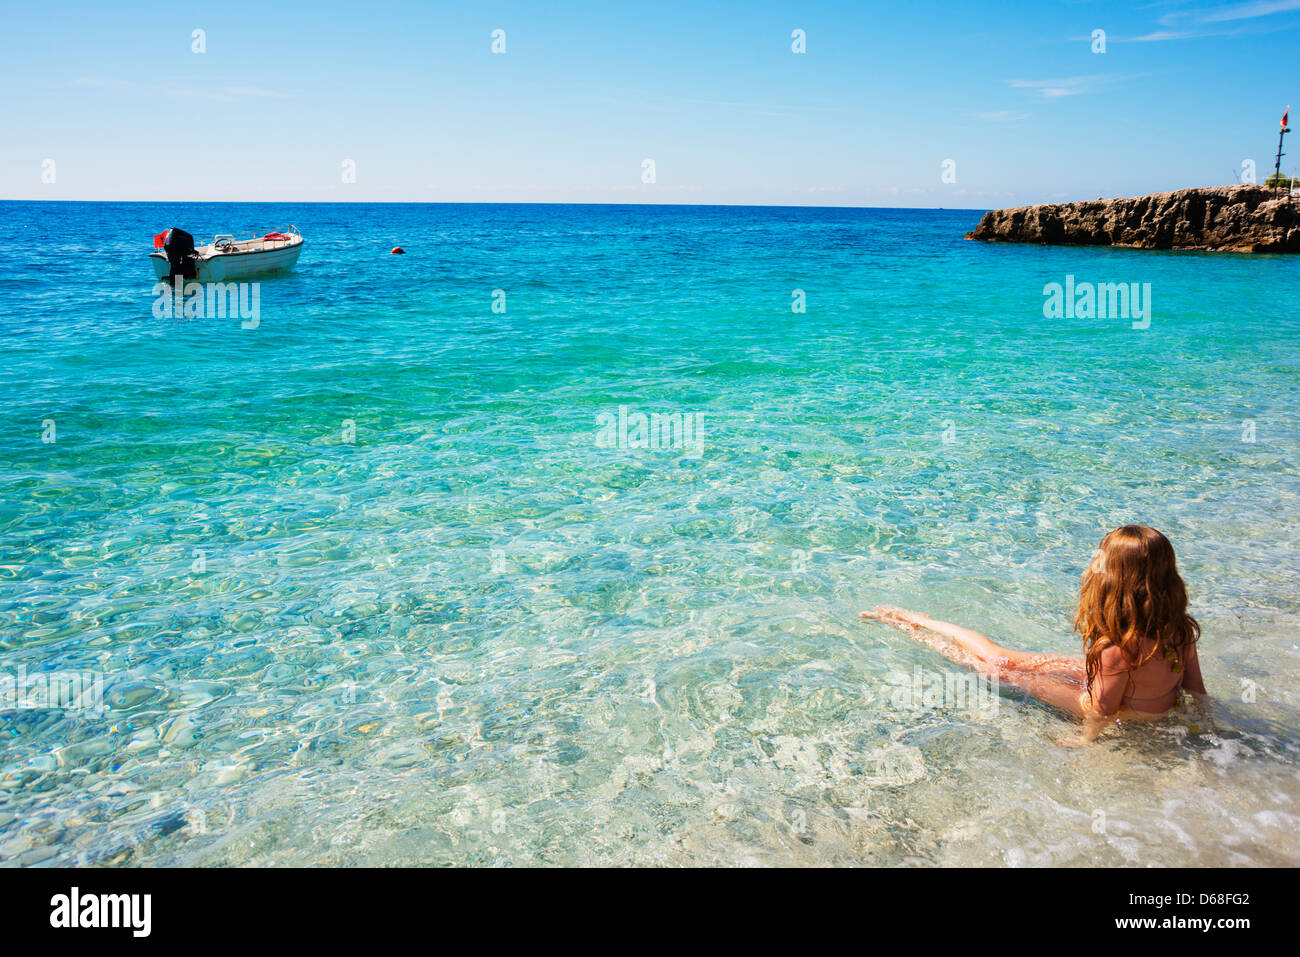 Europe, Albania, Mediterranean Sea, Dhermi, girl on a beach Stock Photo